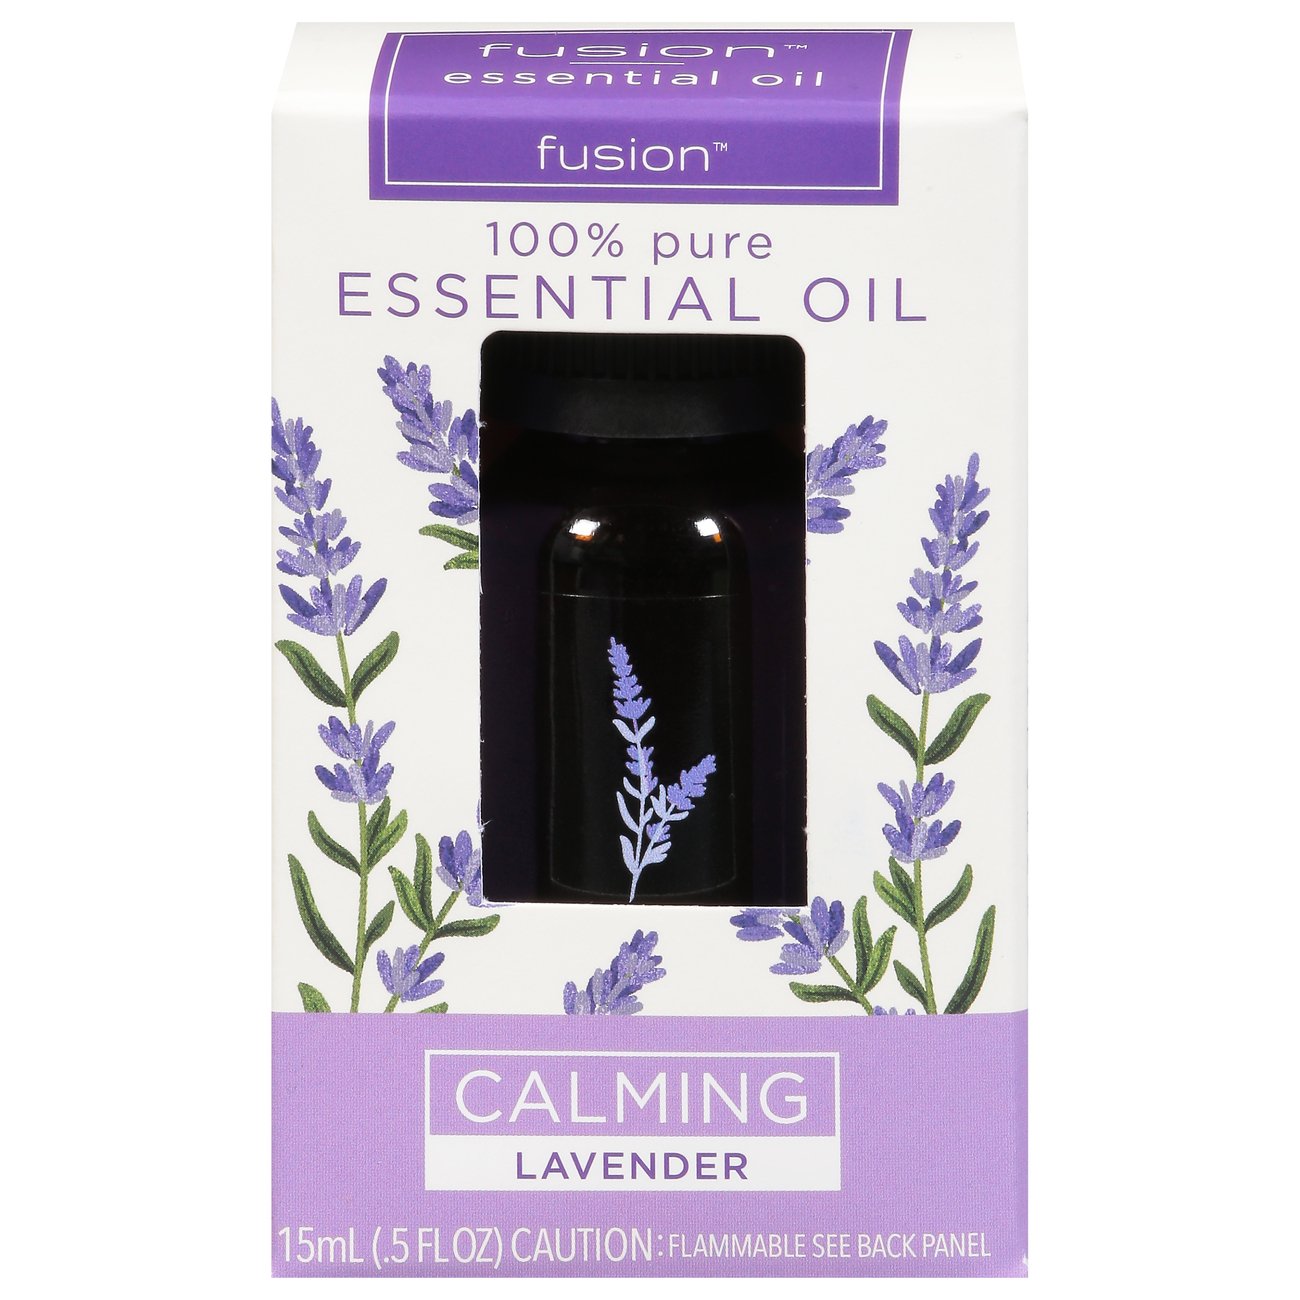 scentsationals essential oils walmart